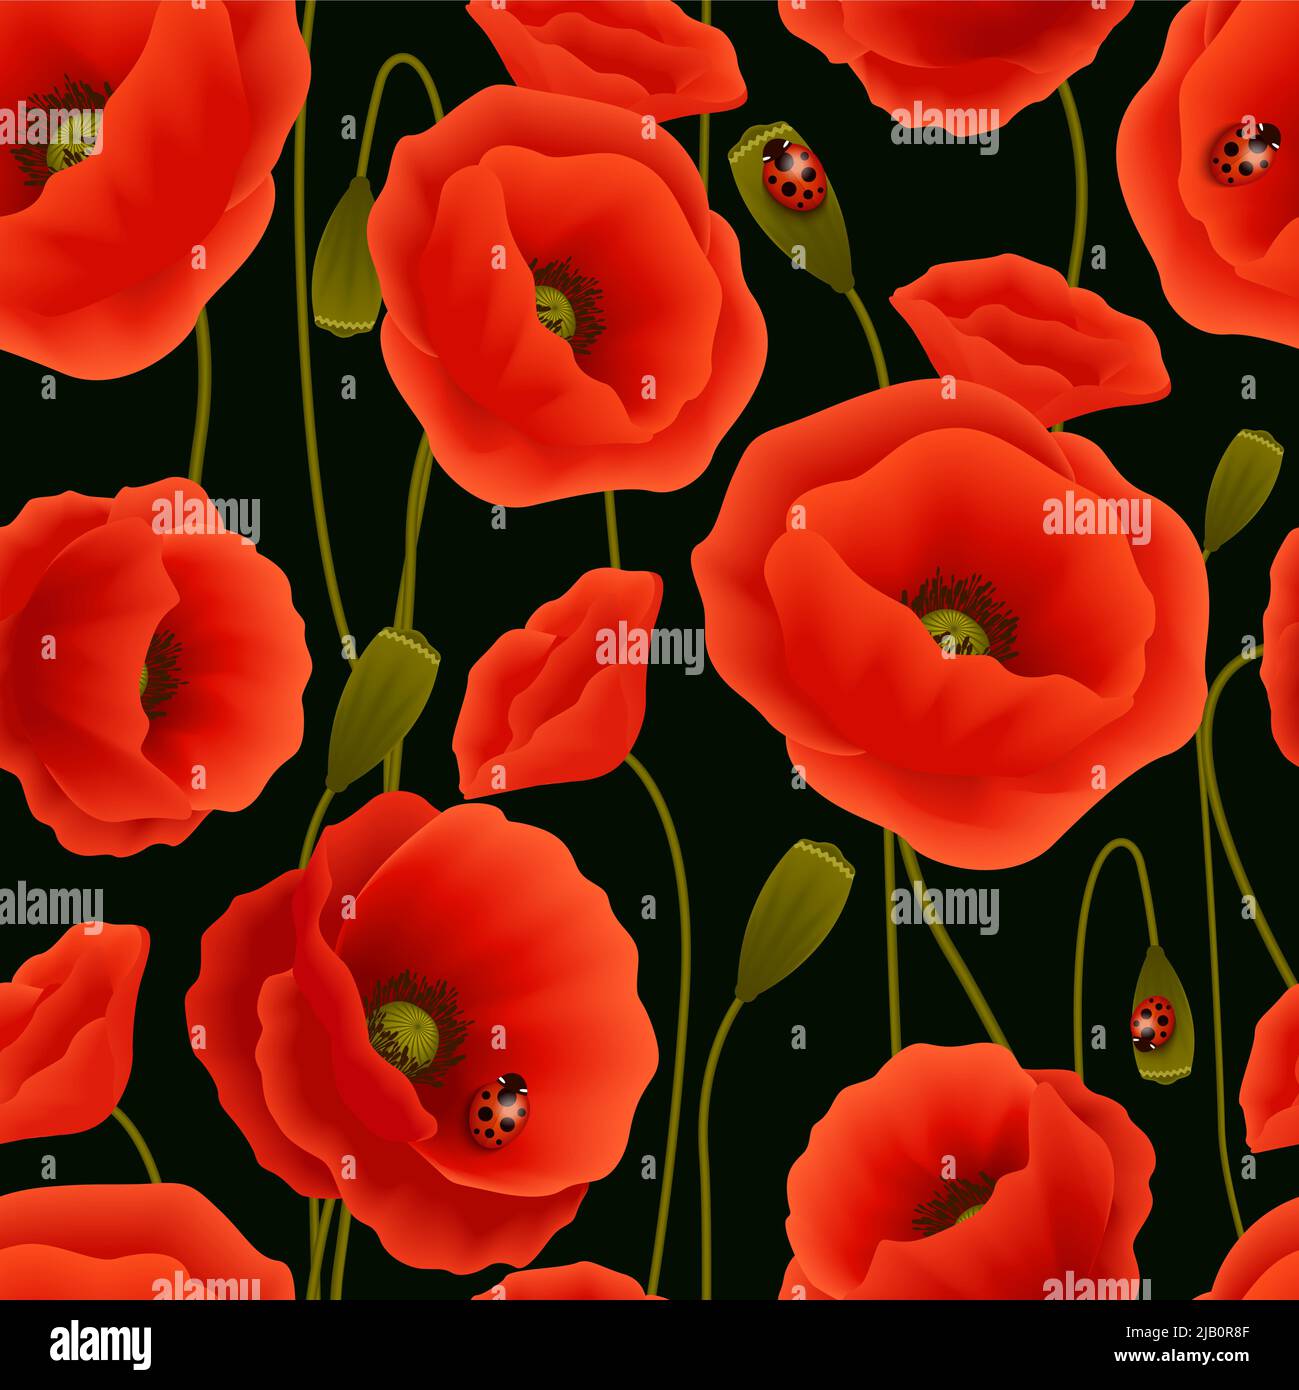 Romantica perfetta floreali modello di fiori di papavero e coccinelle illustrazione vettoriale Illustrazione Vettoriale